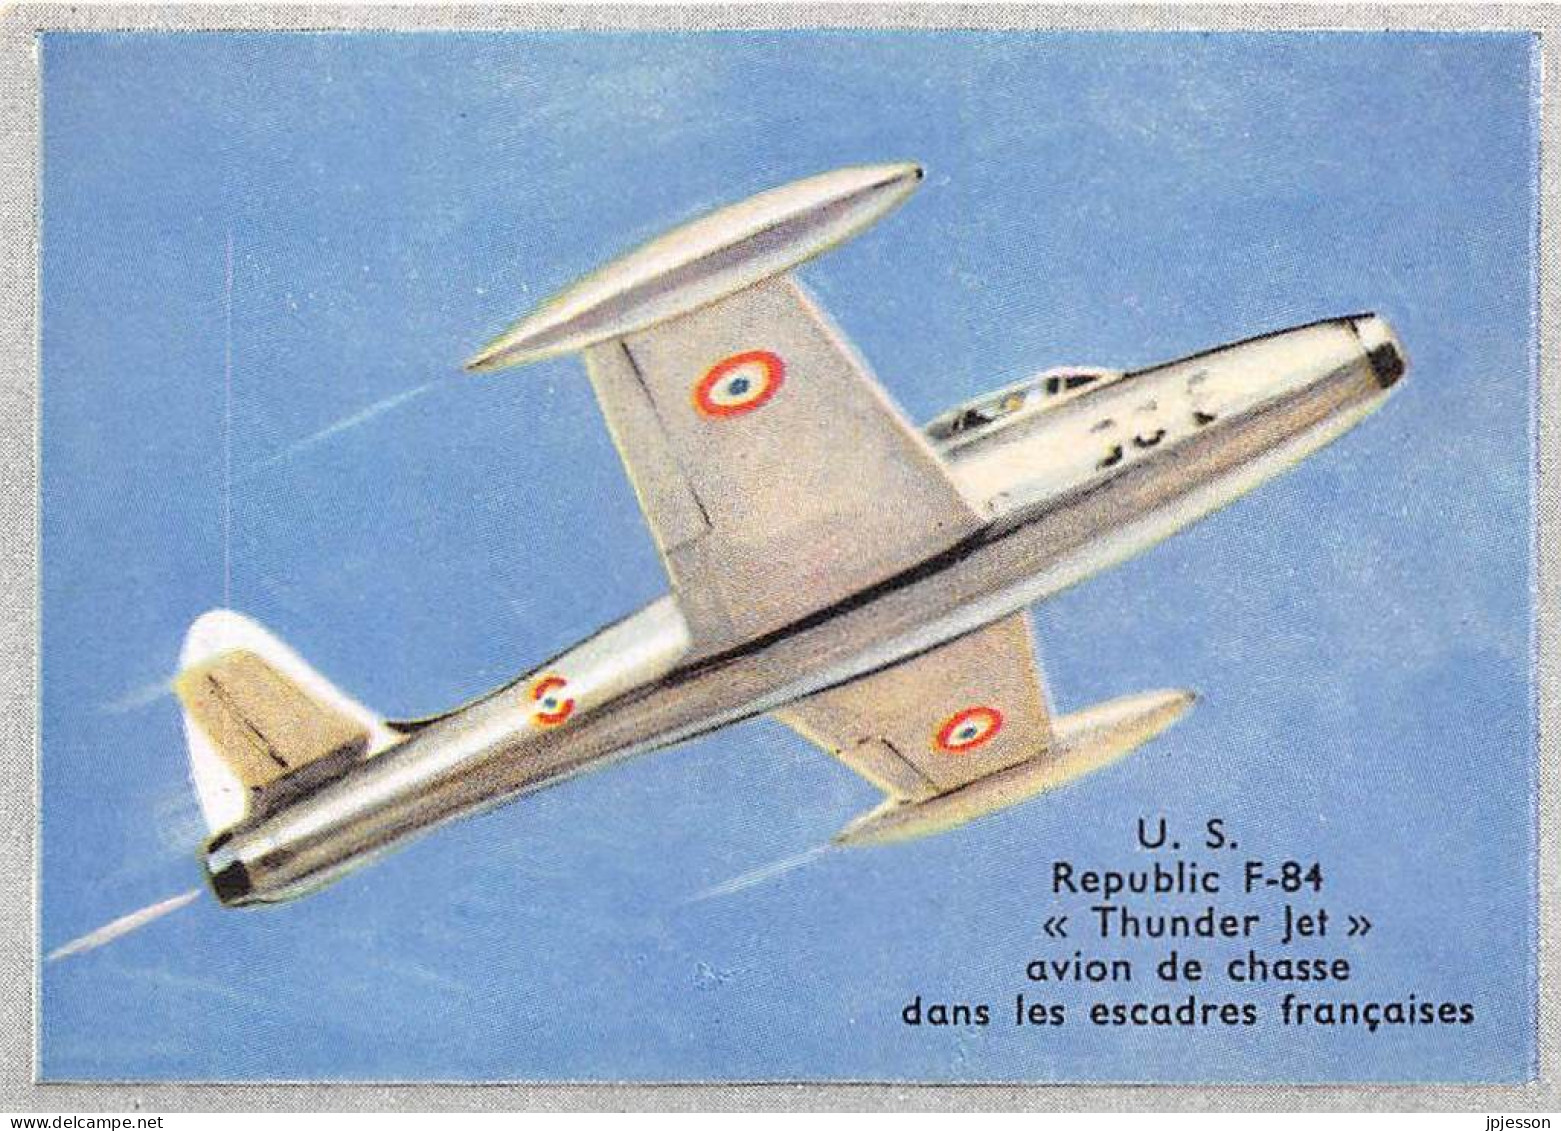 IMAGE - AVIATION - U.S. - REPUBLIC F-84 "THUNDER JET" - AVION DE CHASSE DANS LES ESCADRES FRANCAISES - Vliegtuigen